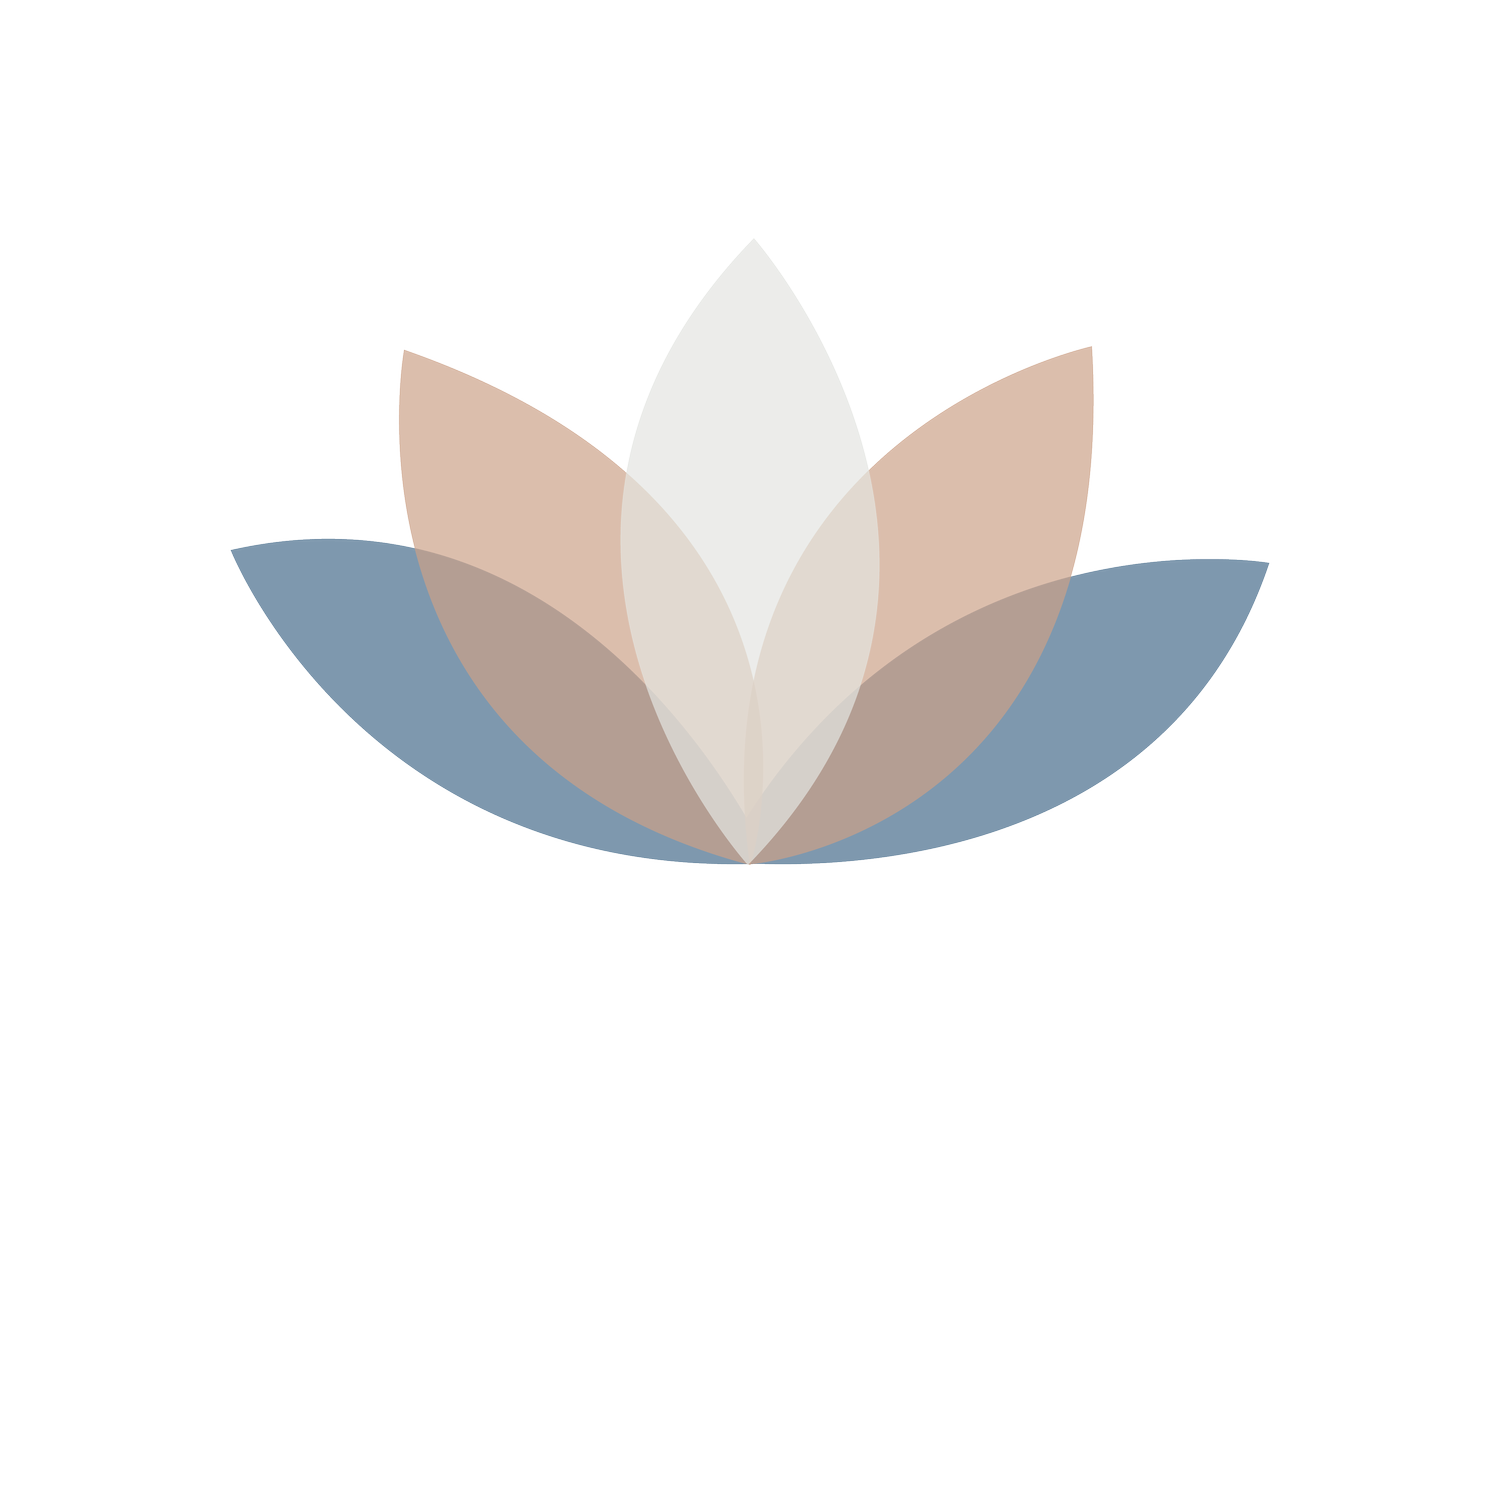 Dr. Brenes Mendieta